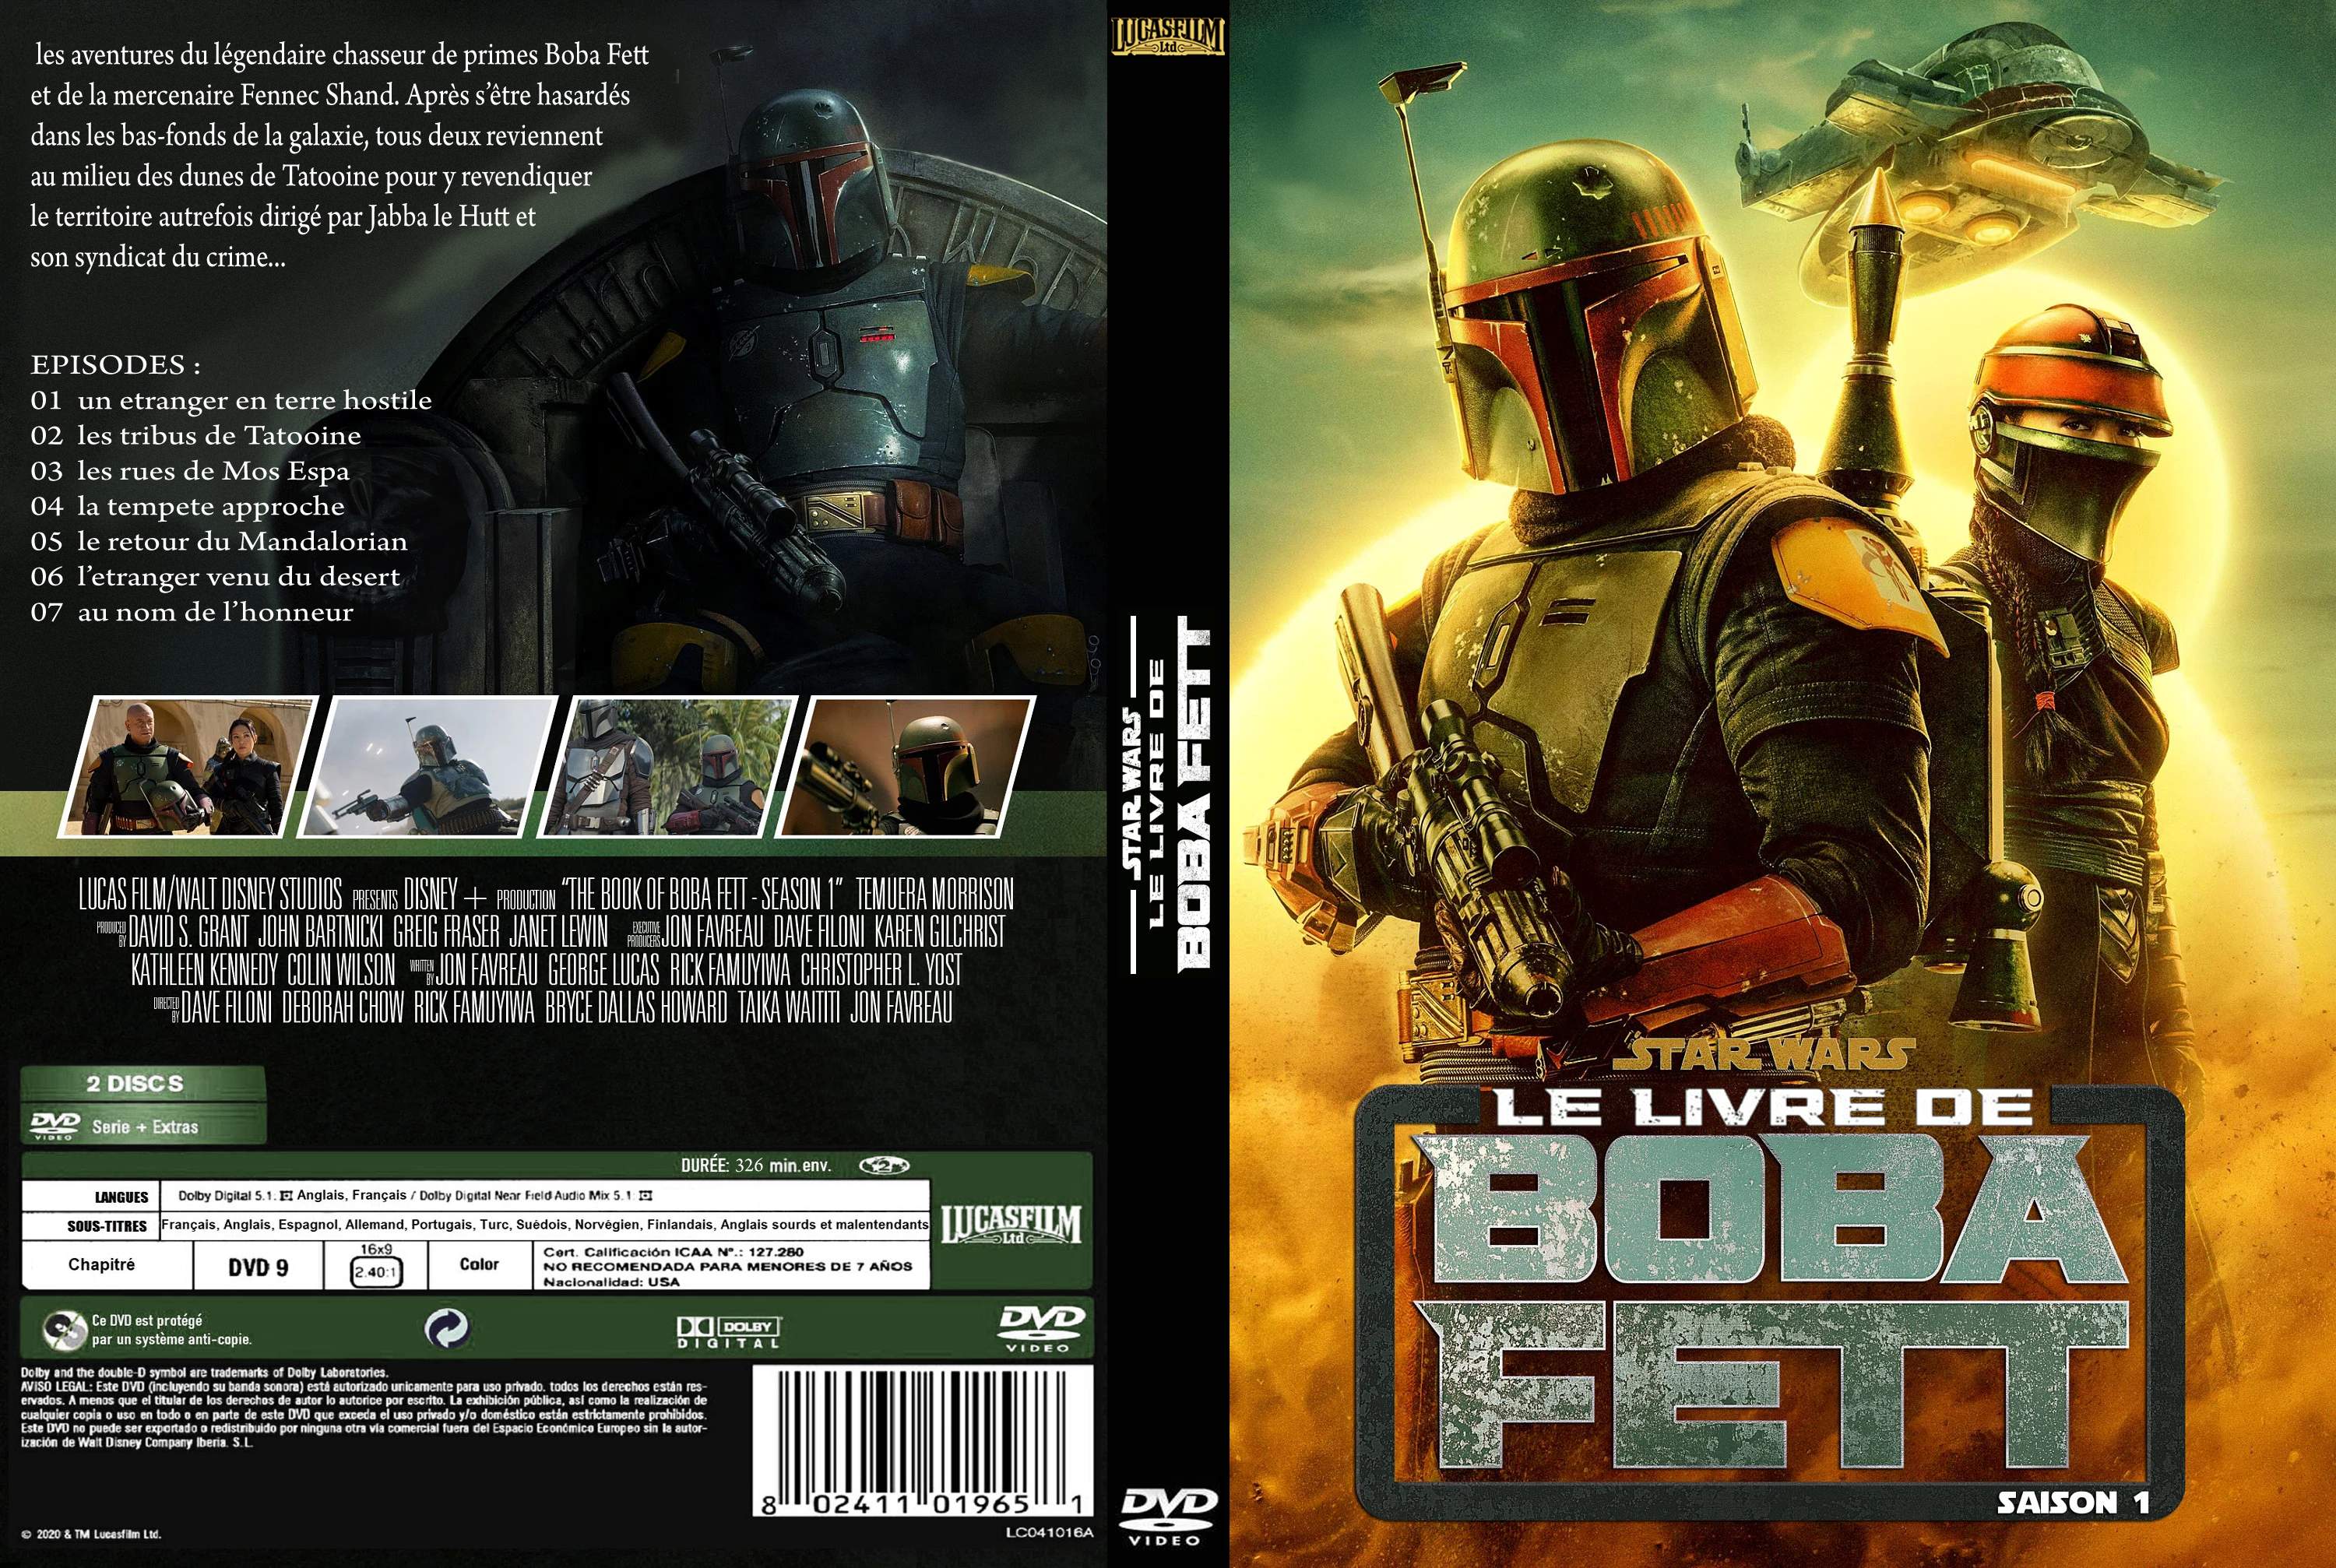 Jaquette DVD Star Wars Le Livre de Boba Fett Saison 1 custom